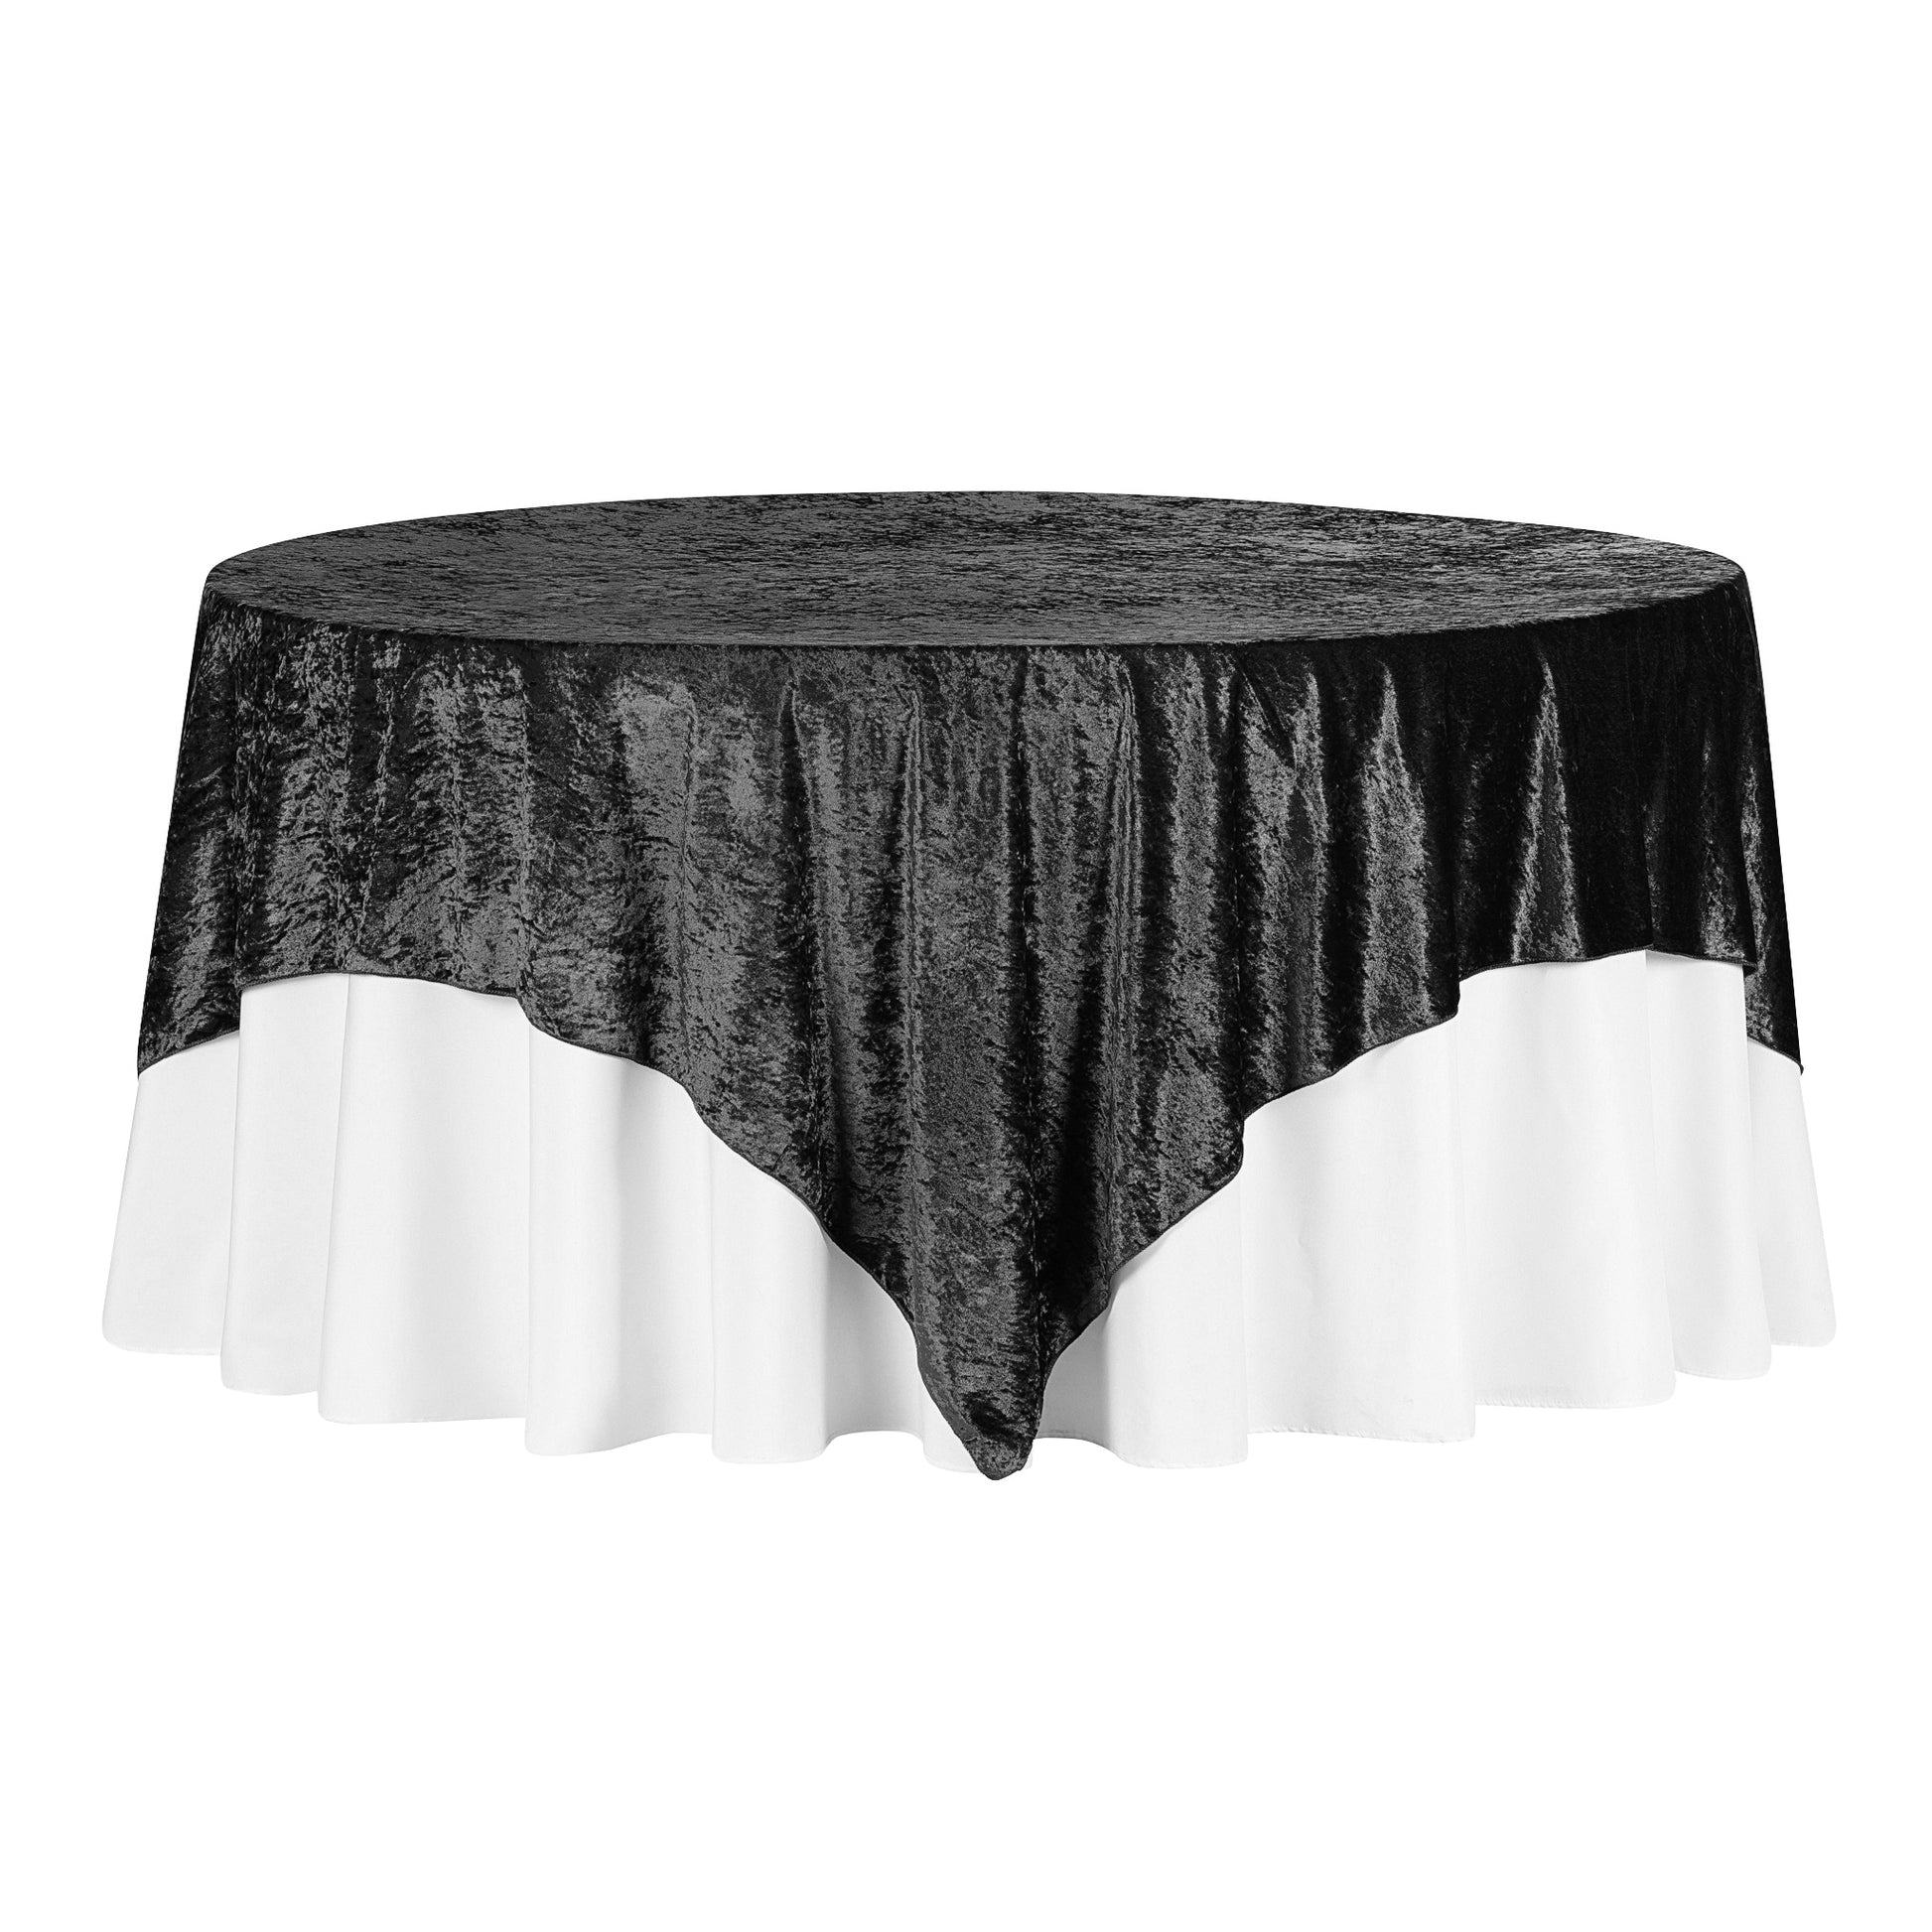 Velvet 85"x85" Square Tablecloth Table Overlay - Black - CV Linens